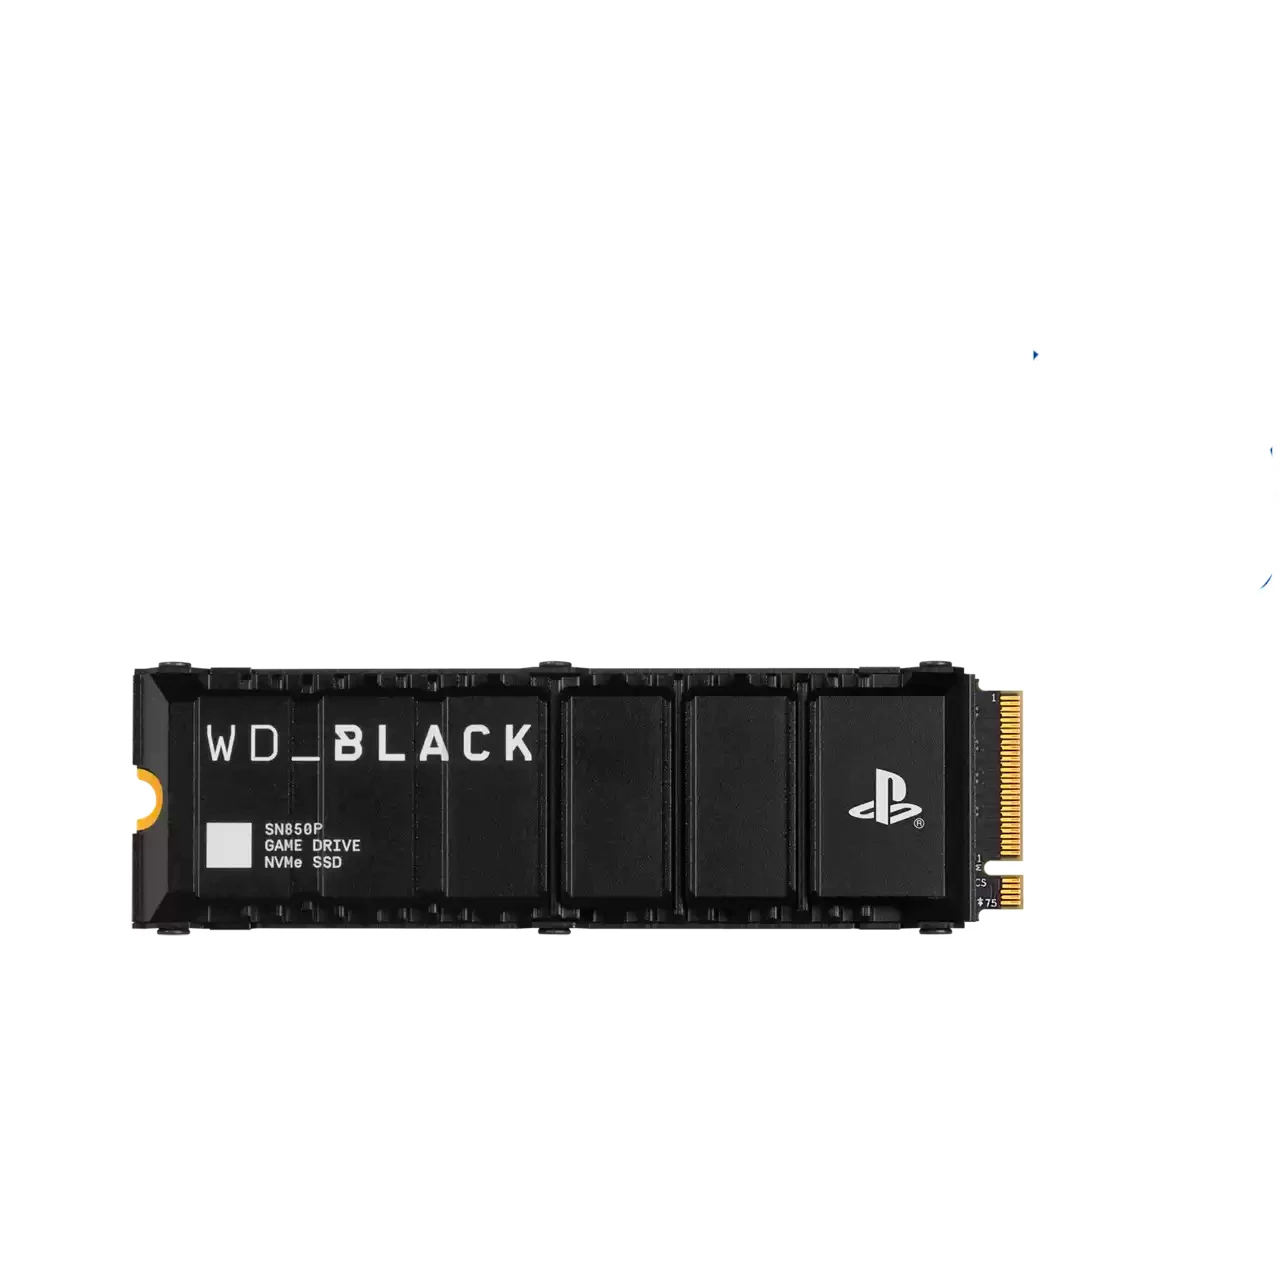 Додаткова пам'ять WD_BLACK 1TB SN850P NVMe SSD for PS5 consoles (WDBBYV0010BNC-WRSN)